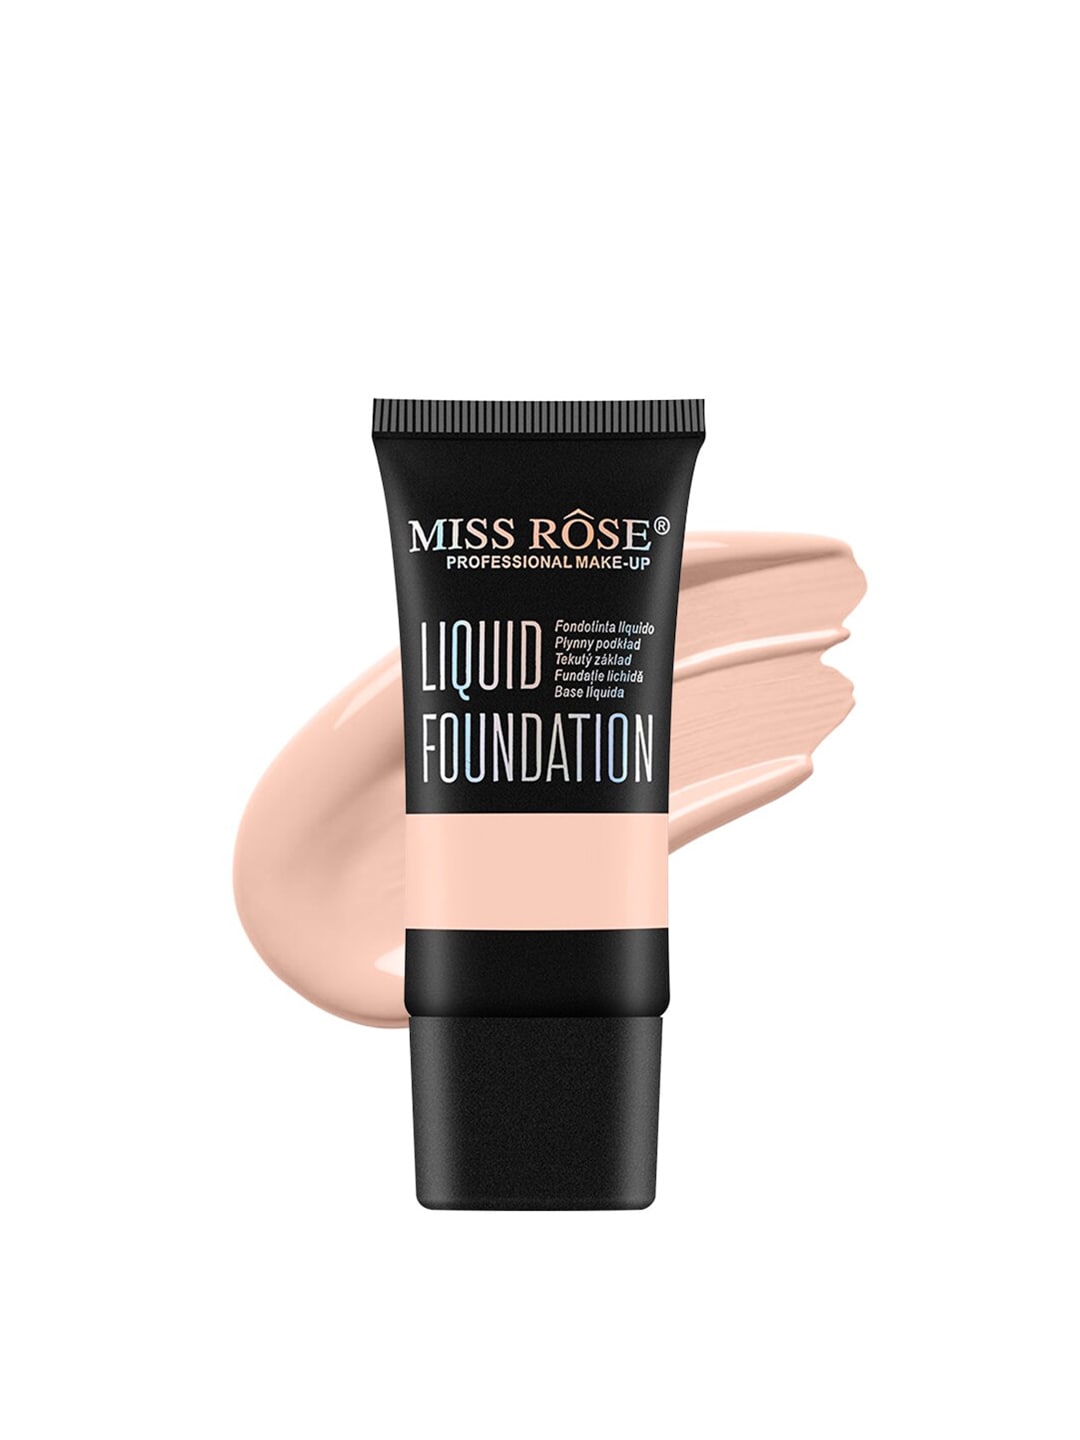 MISS ROSE Matte Finish Liquid Foundation - Beige 03 Price in India